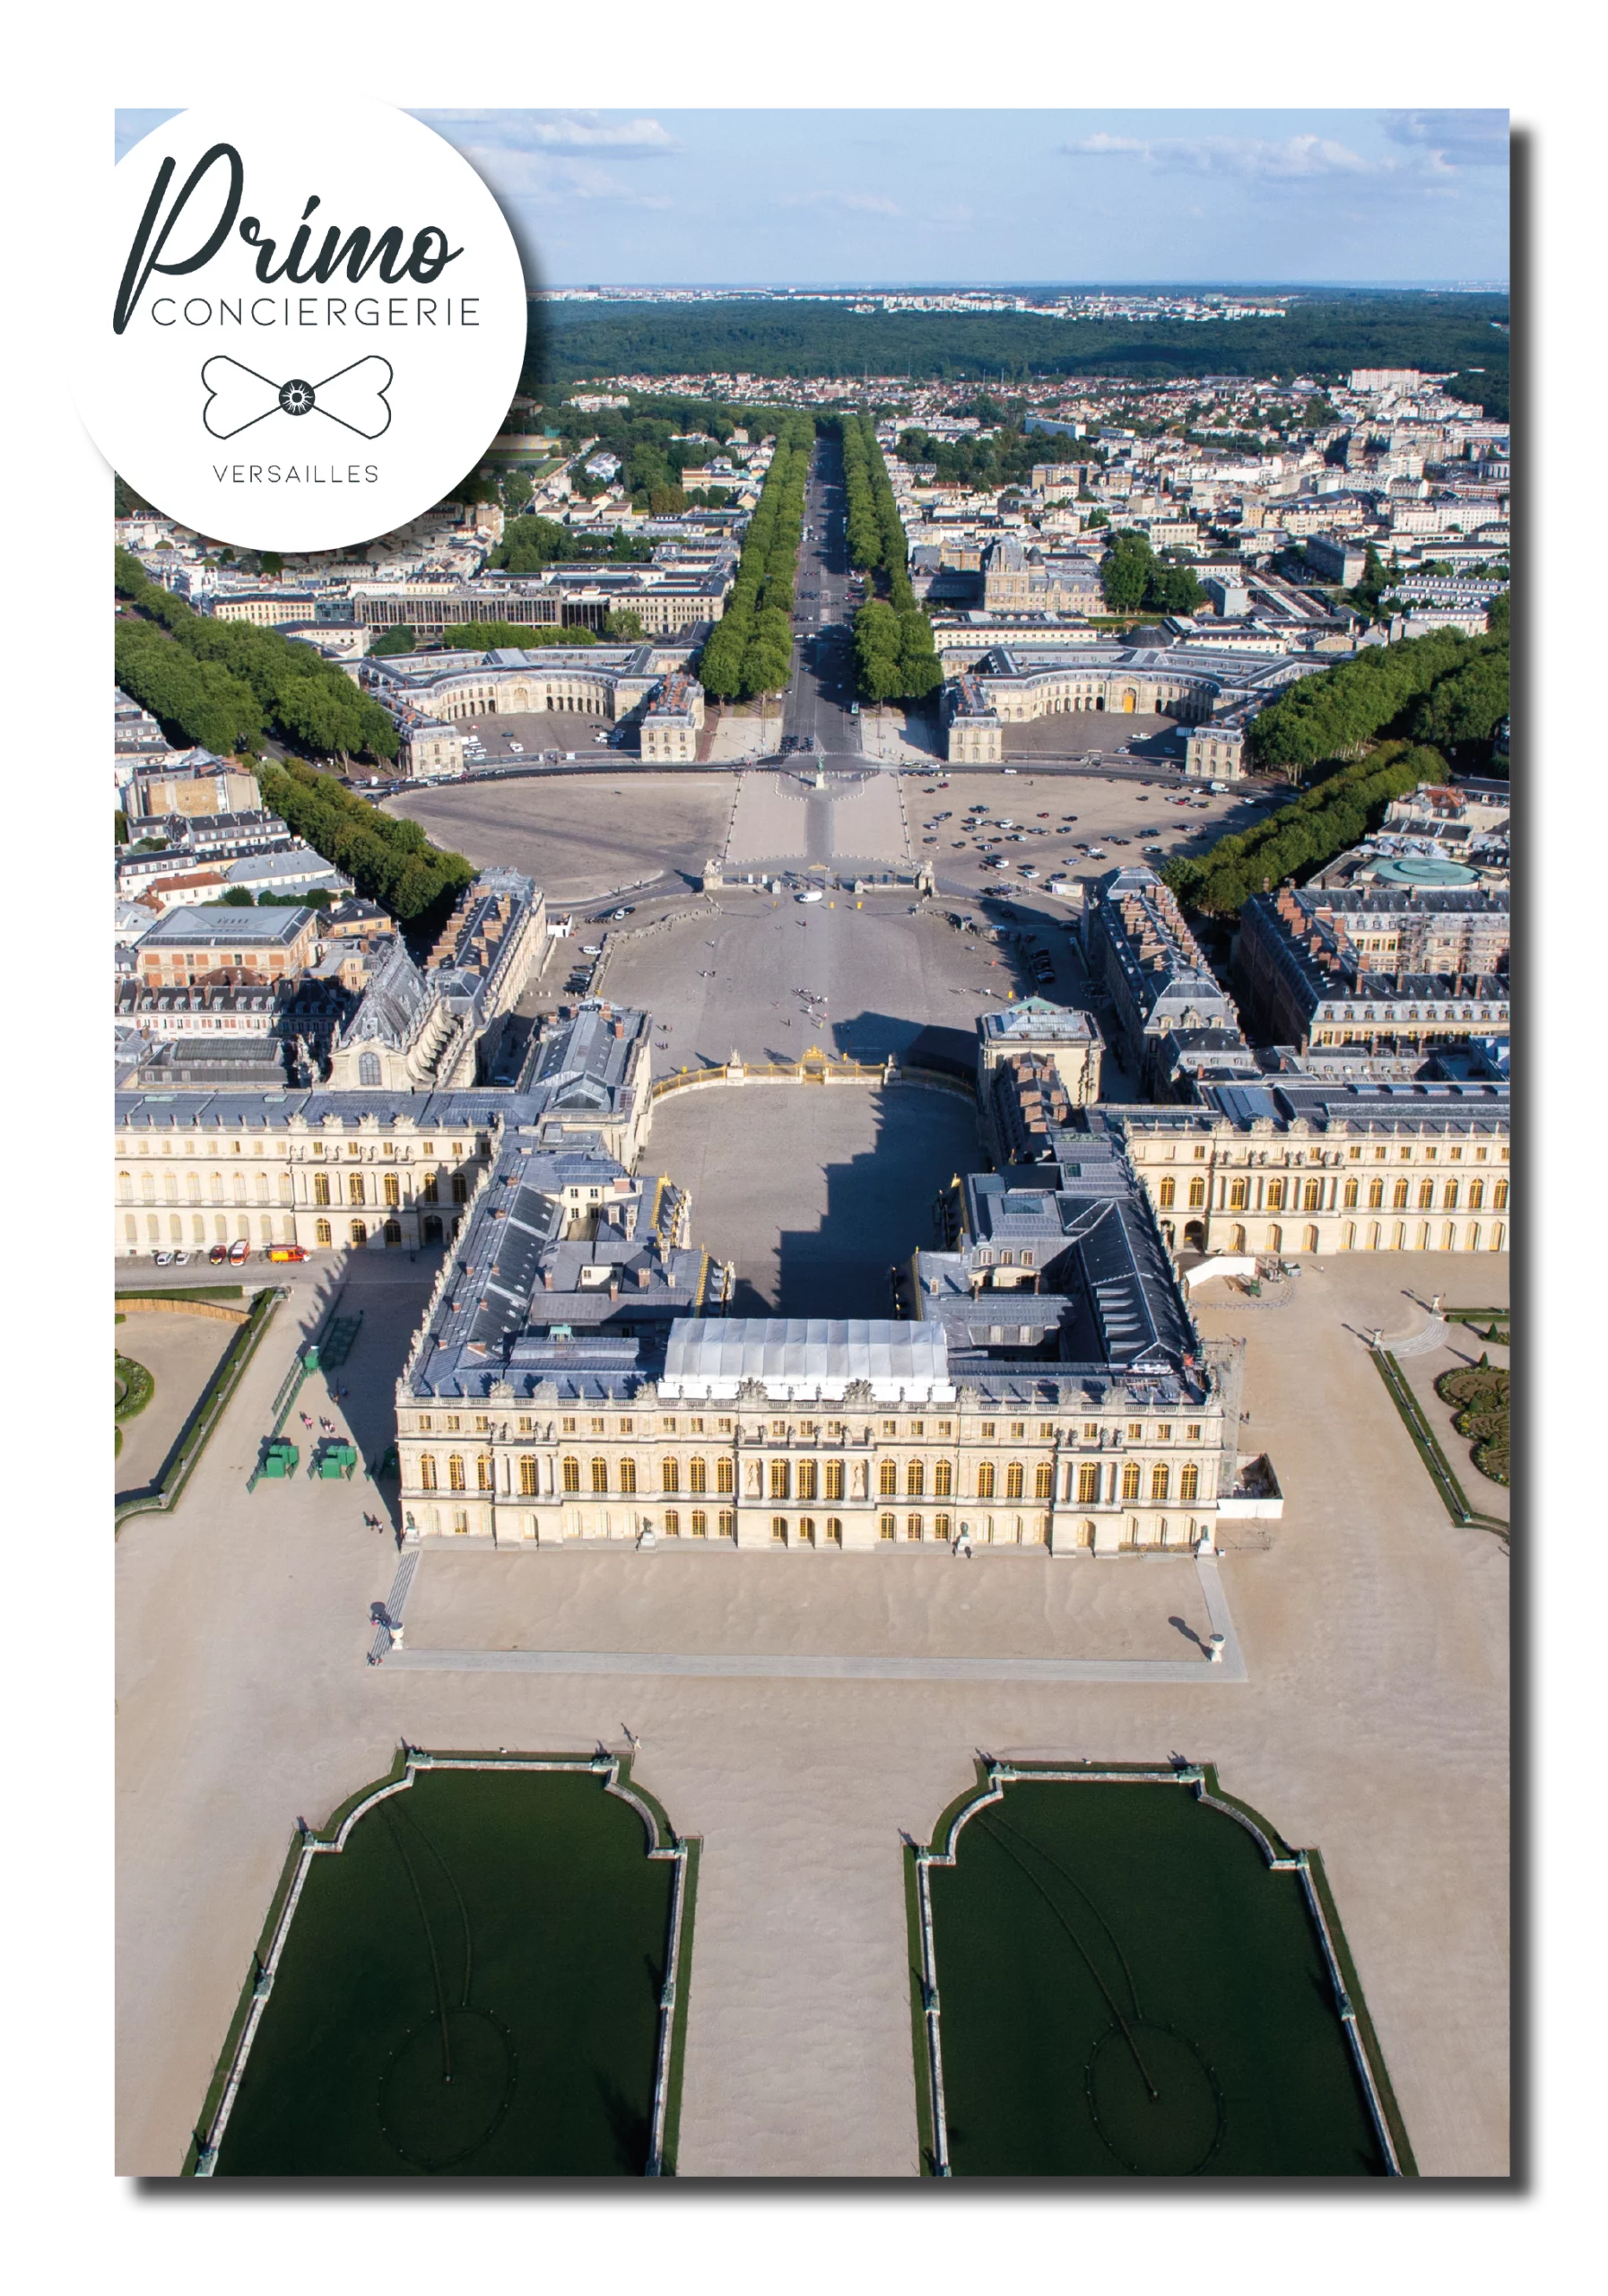 Photographie de la ville de Versailles, célèbre pour son château et ses jardins, montrant les bâtiments historiques, les rues pavées et les espaces verts bien entretenus.